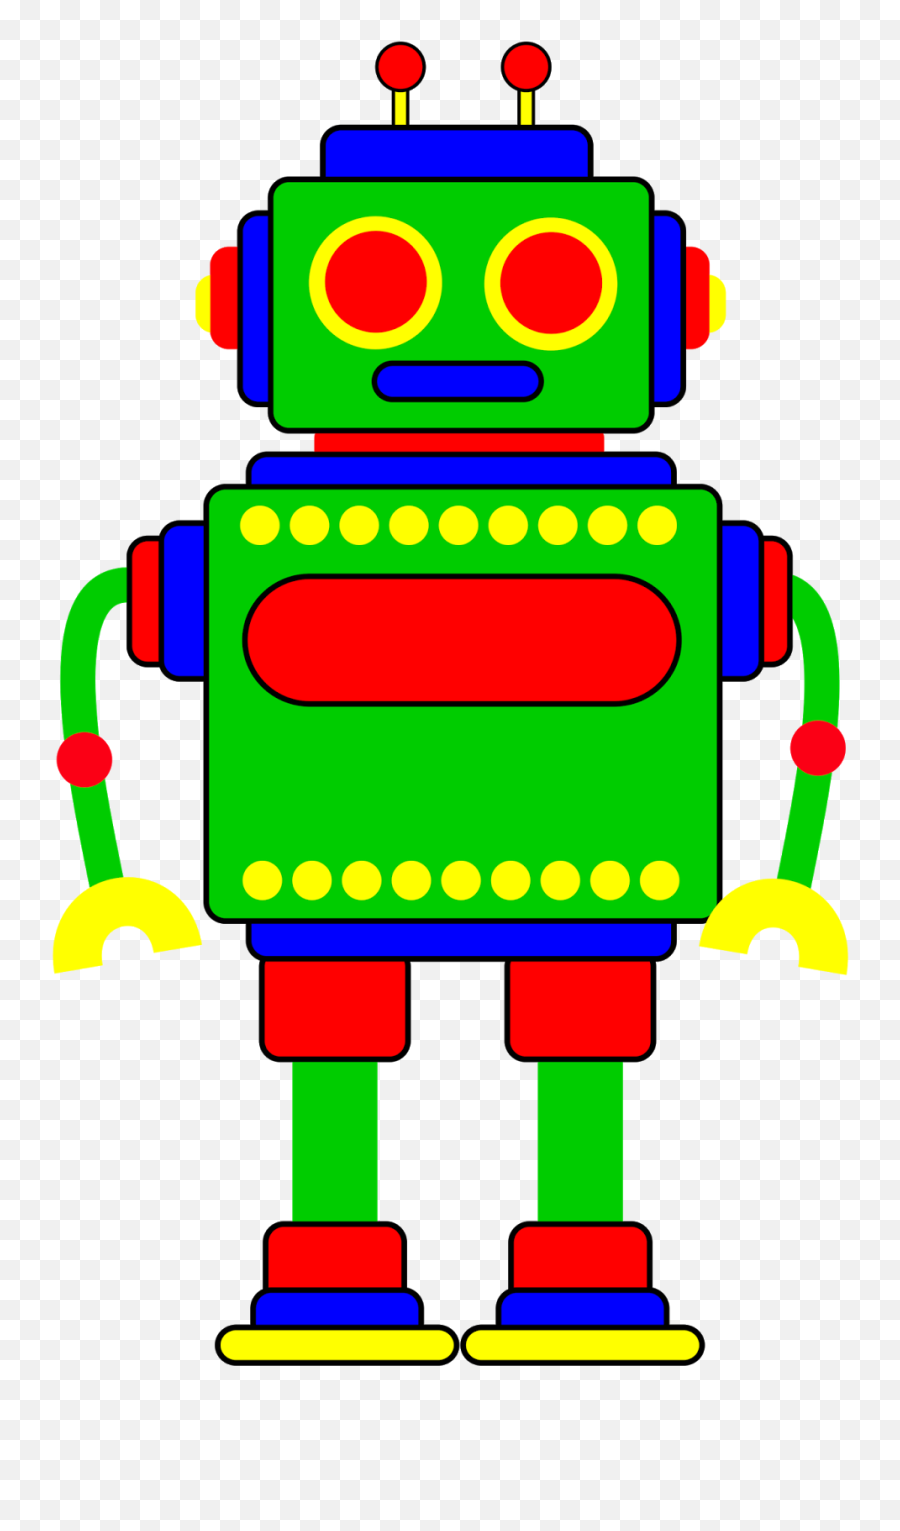 Robotpng - Clip Art Of Robot,Robot Png